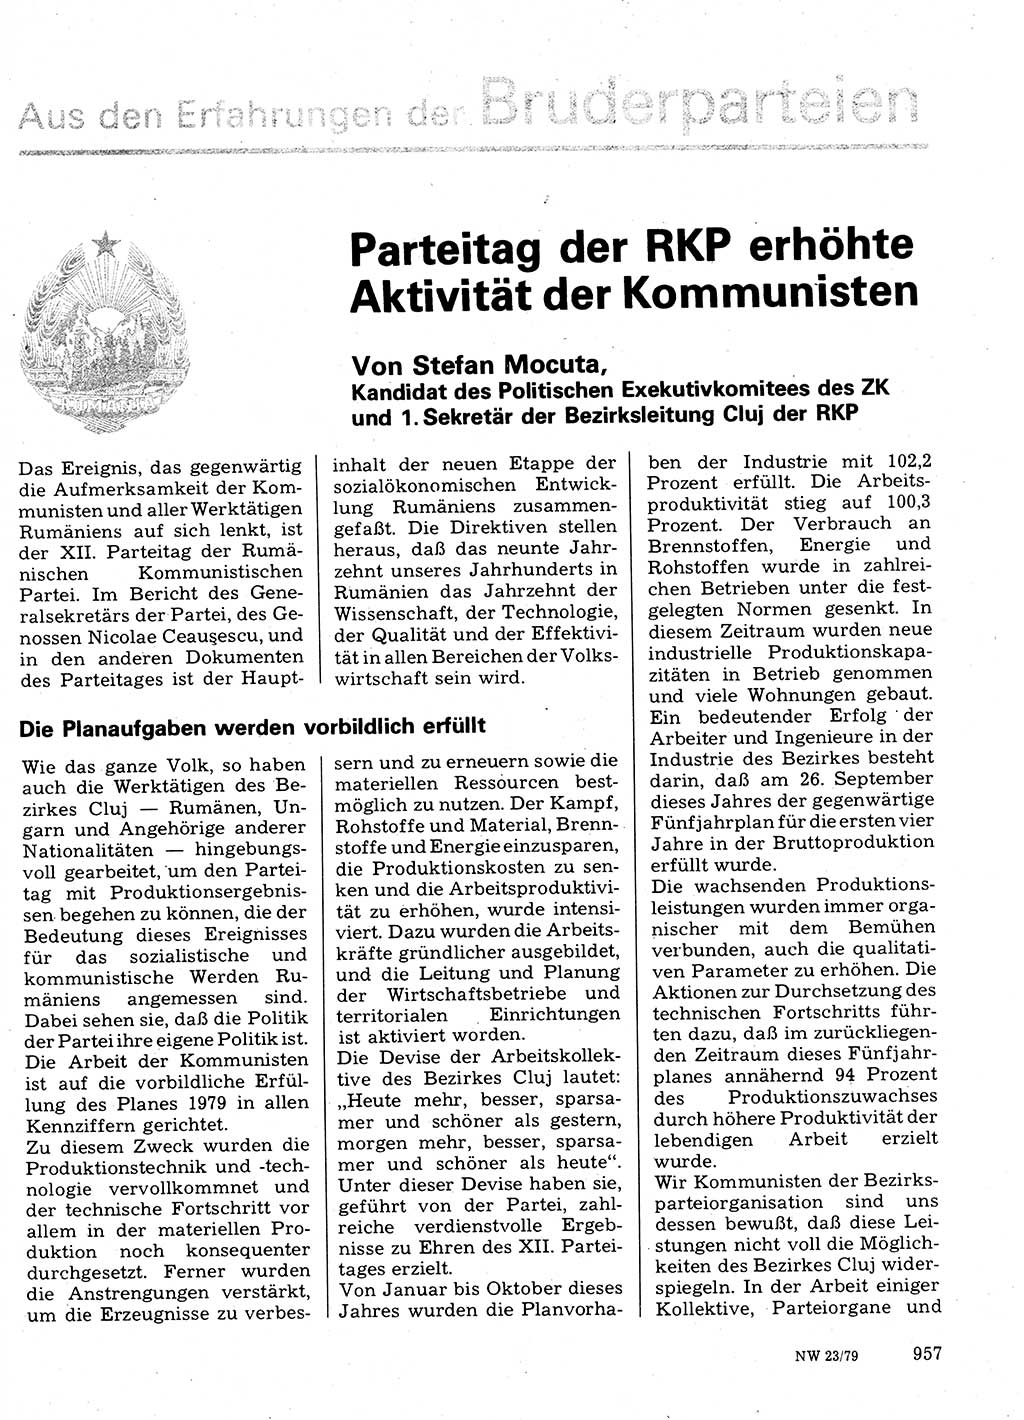 Neuer Weg (NW), Organ des Zentralkomitees (ZK) der SED (Sozialistische Einheitspartei Deutschlands) für Fragen des Parteilebens, 34. Jahrgang [Deutsche Demokratische Republik (DDR)] 1979, Seite 957 (NW ZK SED DDR 1979, S. 957)